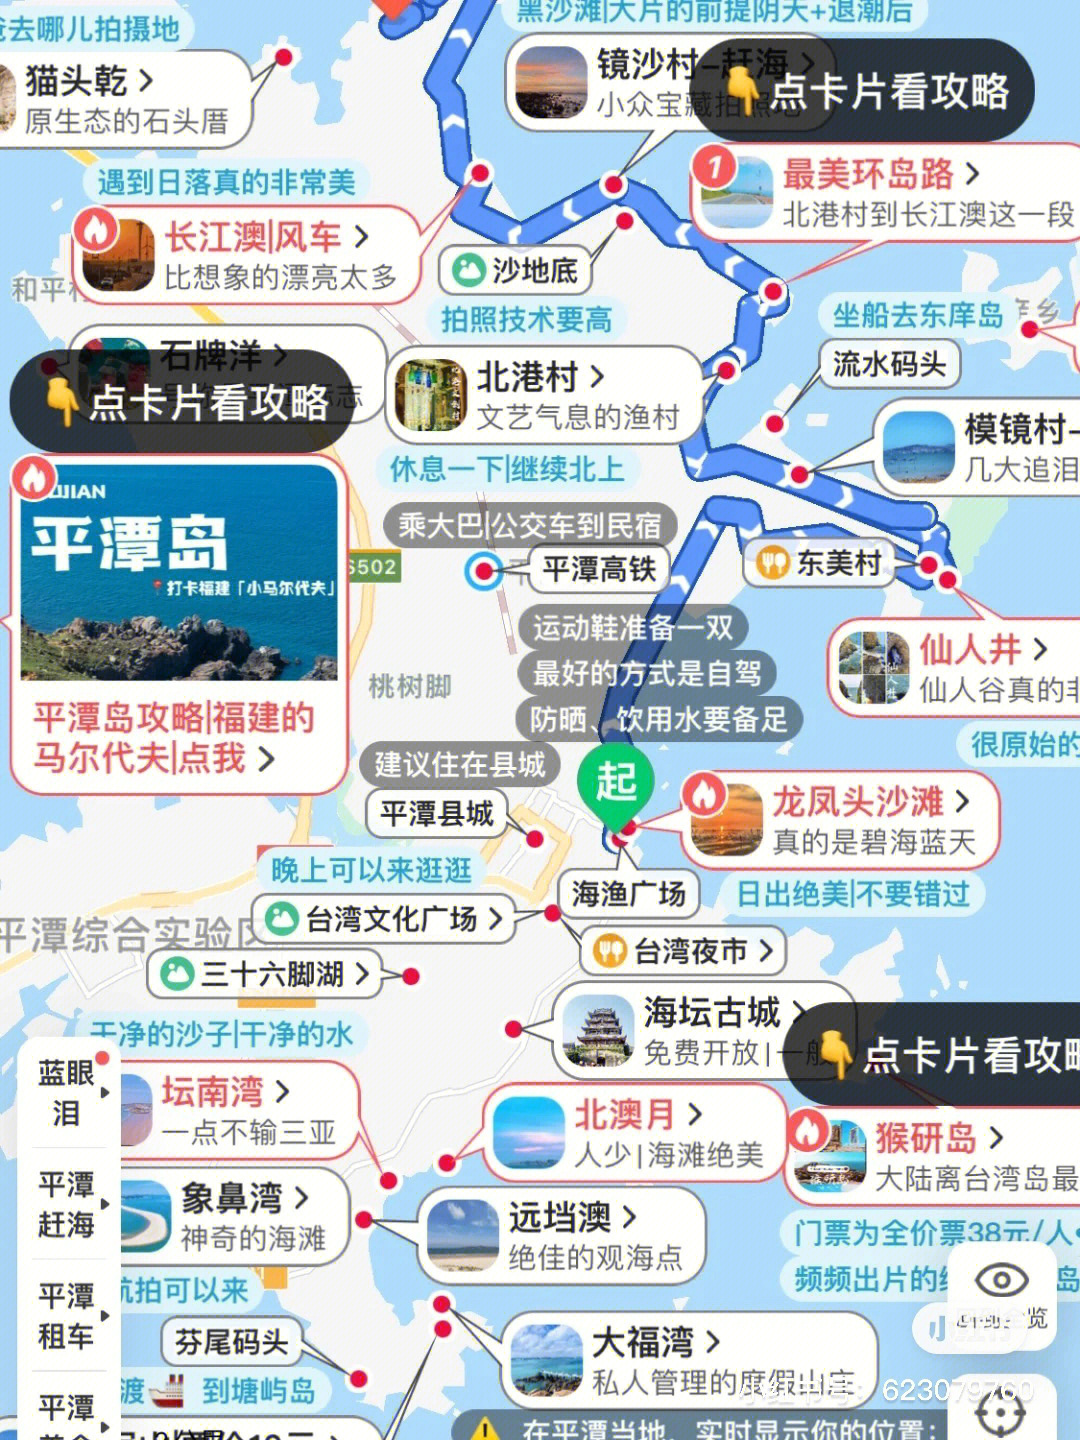 平潭岛旅行地图高清图片